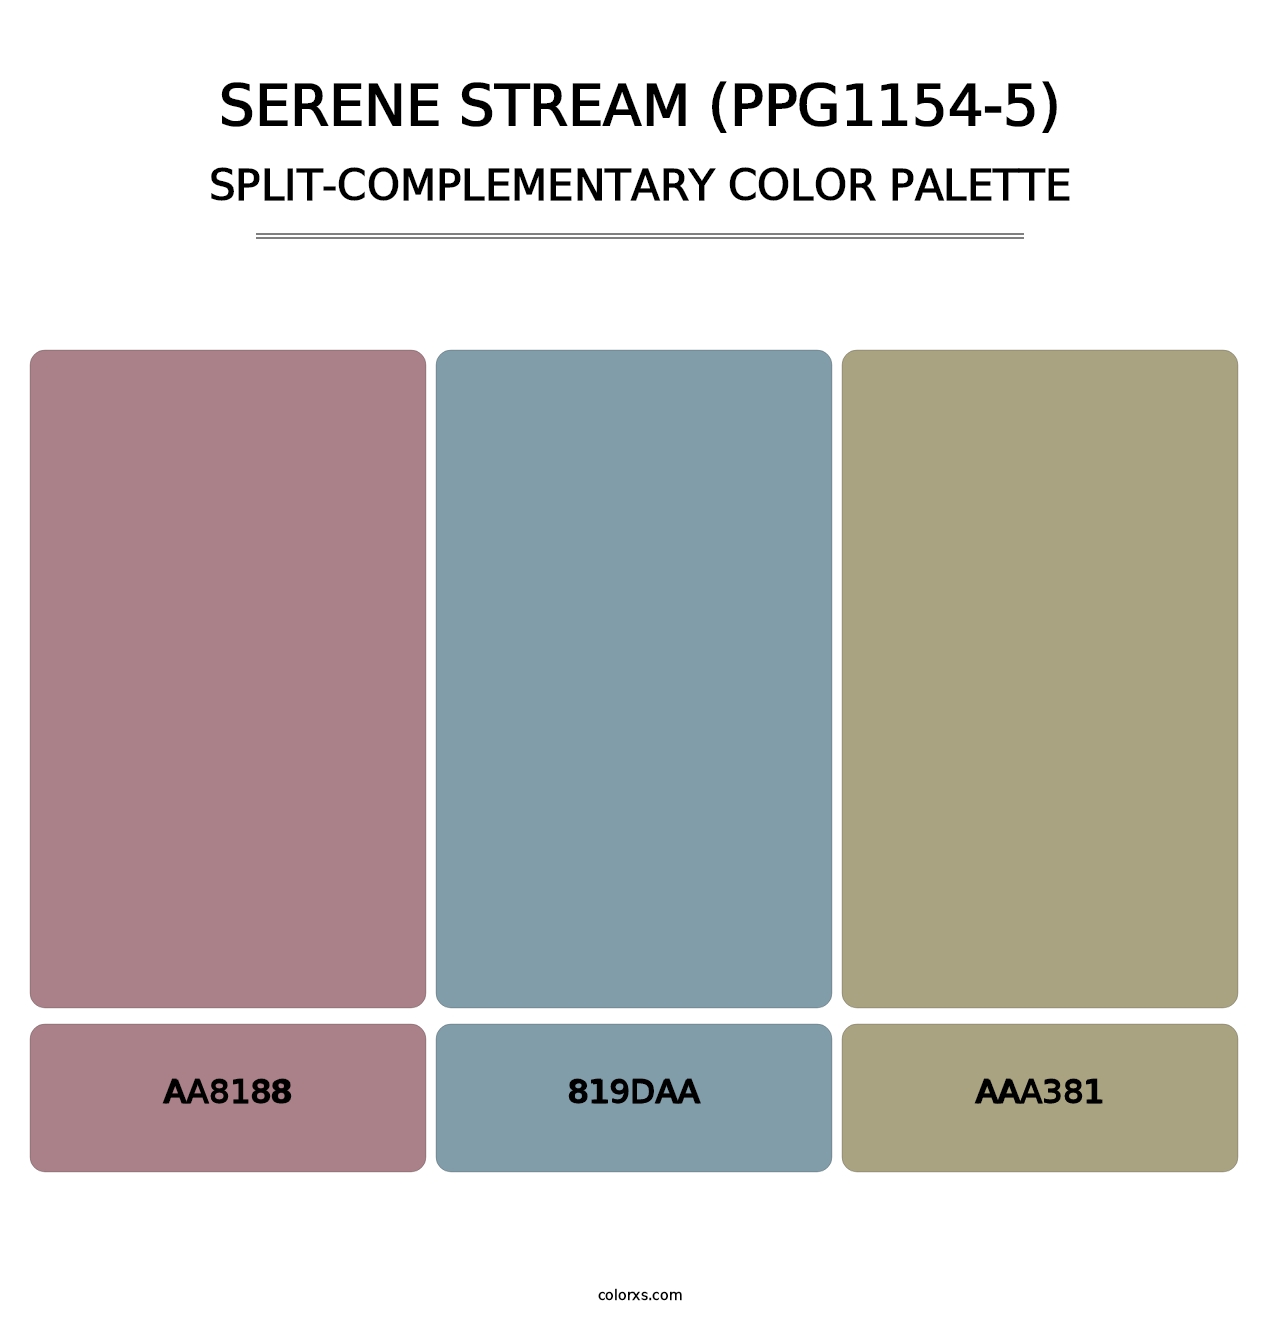 Serene Stream (PPG1154-5) - Split-Complementary Color Palette